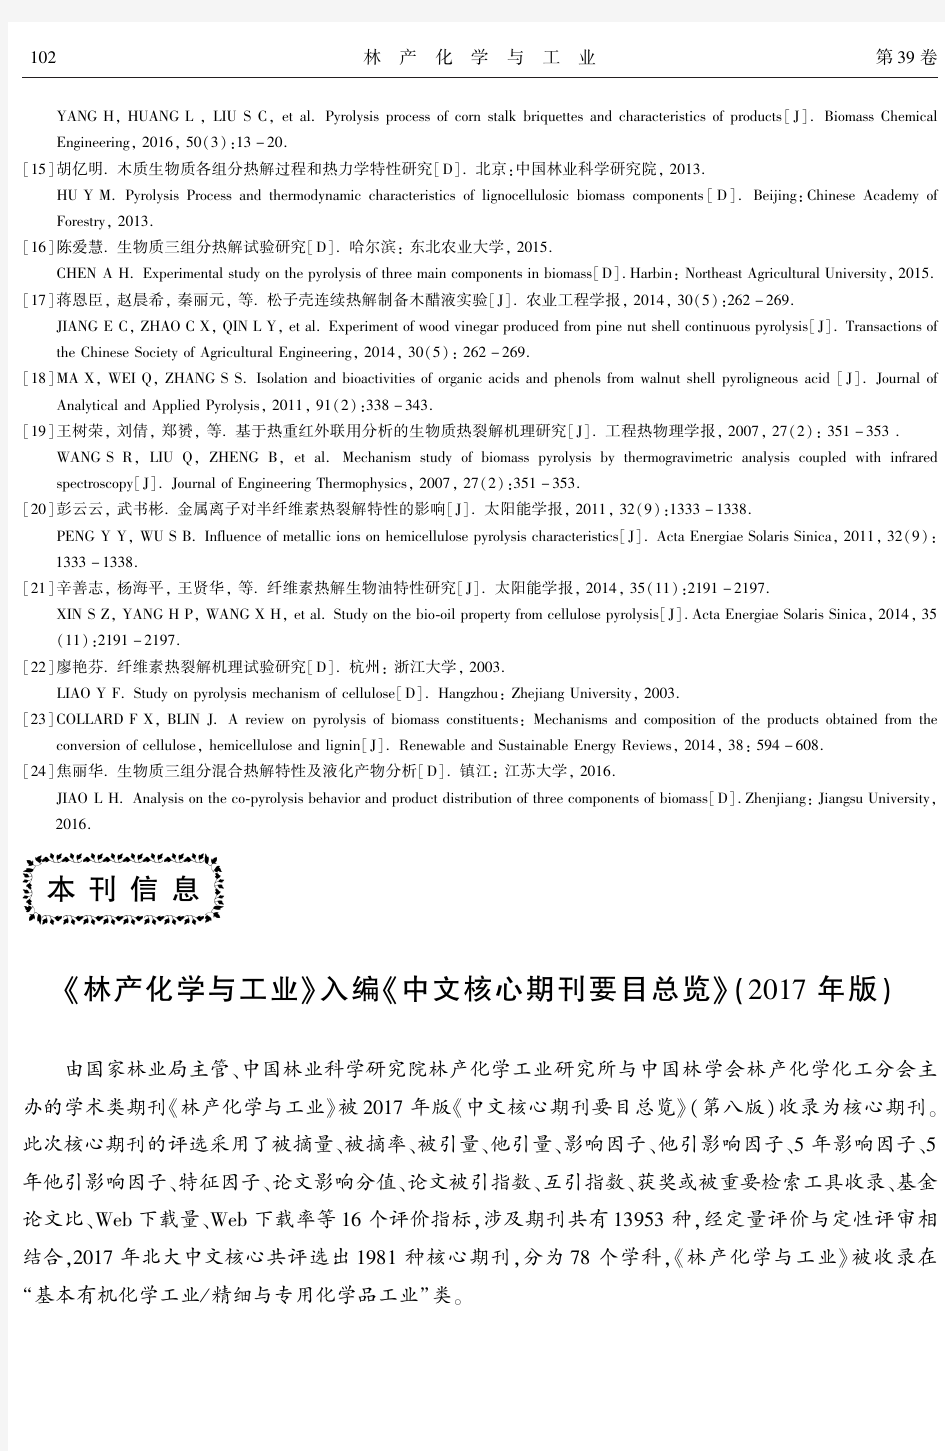 《林产化学与工业》入编《中文核心期刊要目总览》(2017年版)